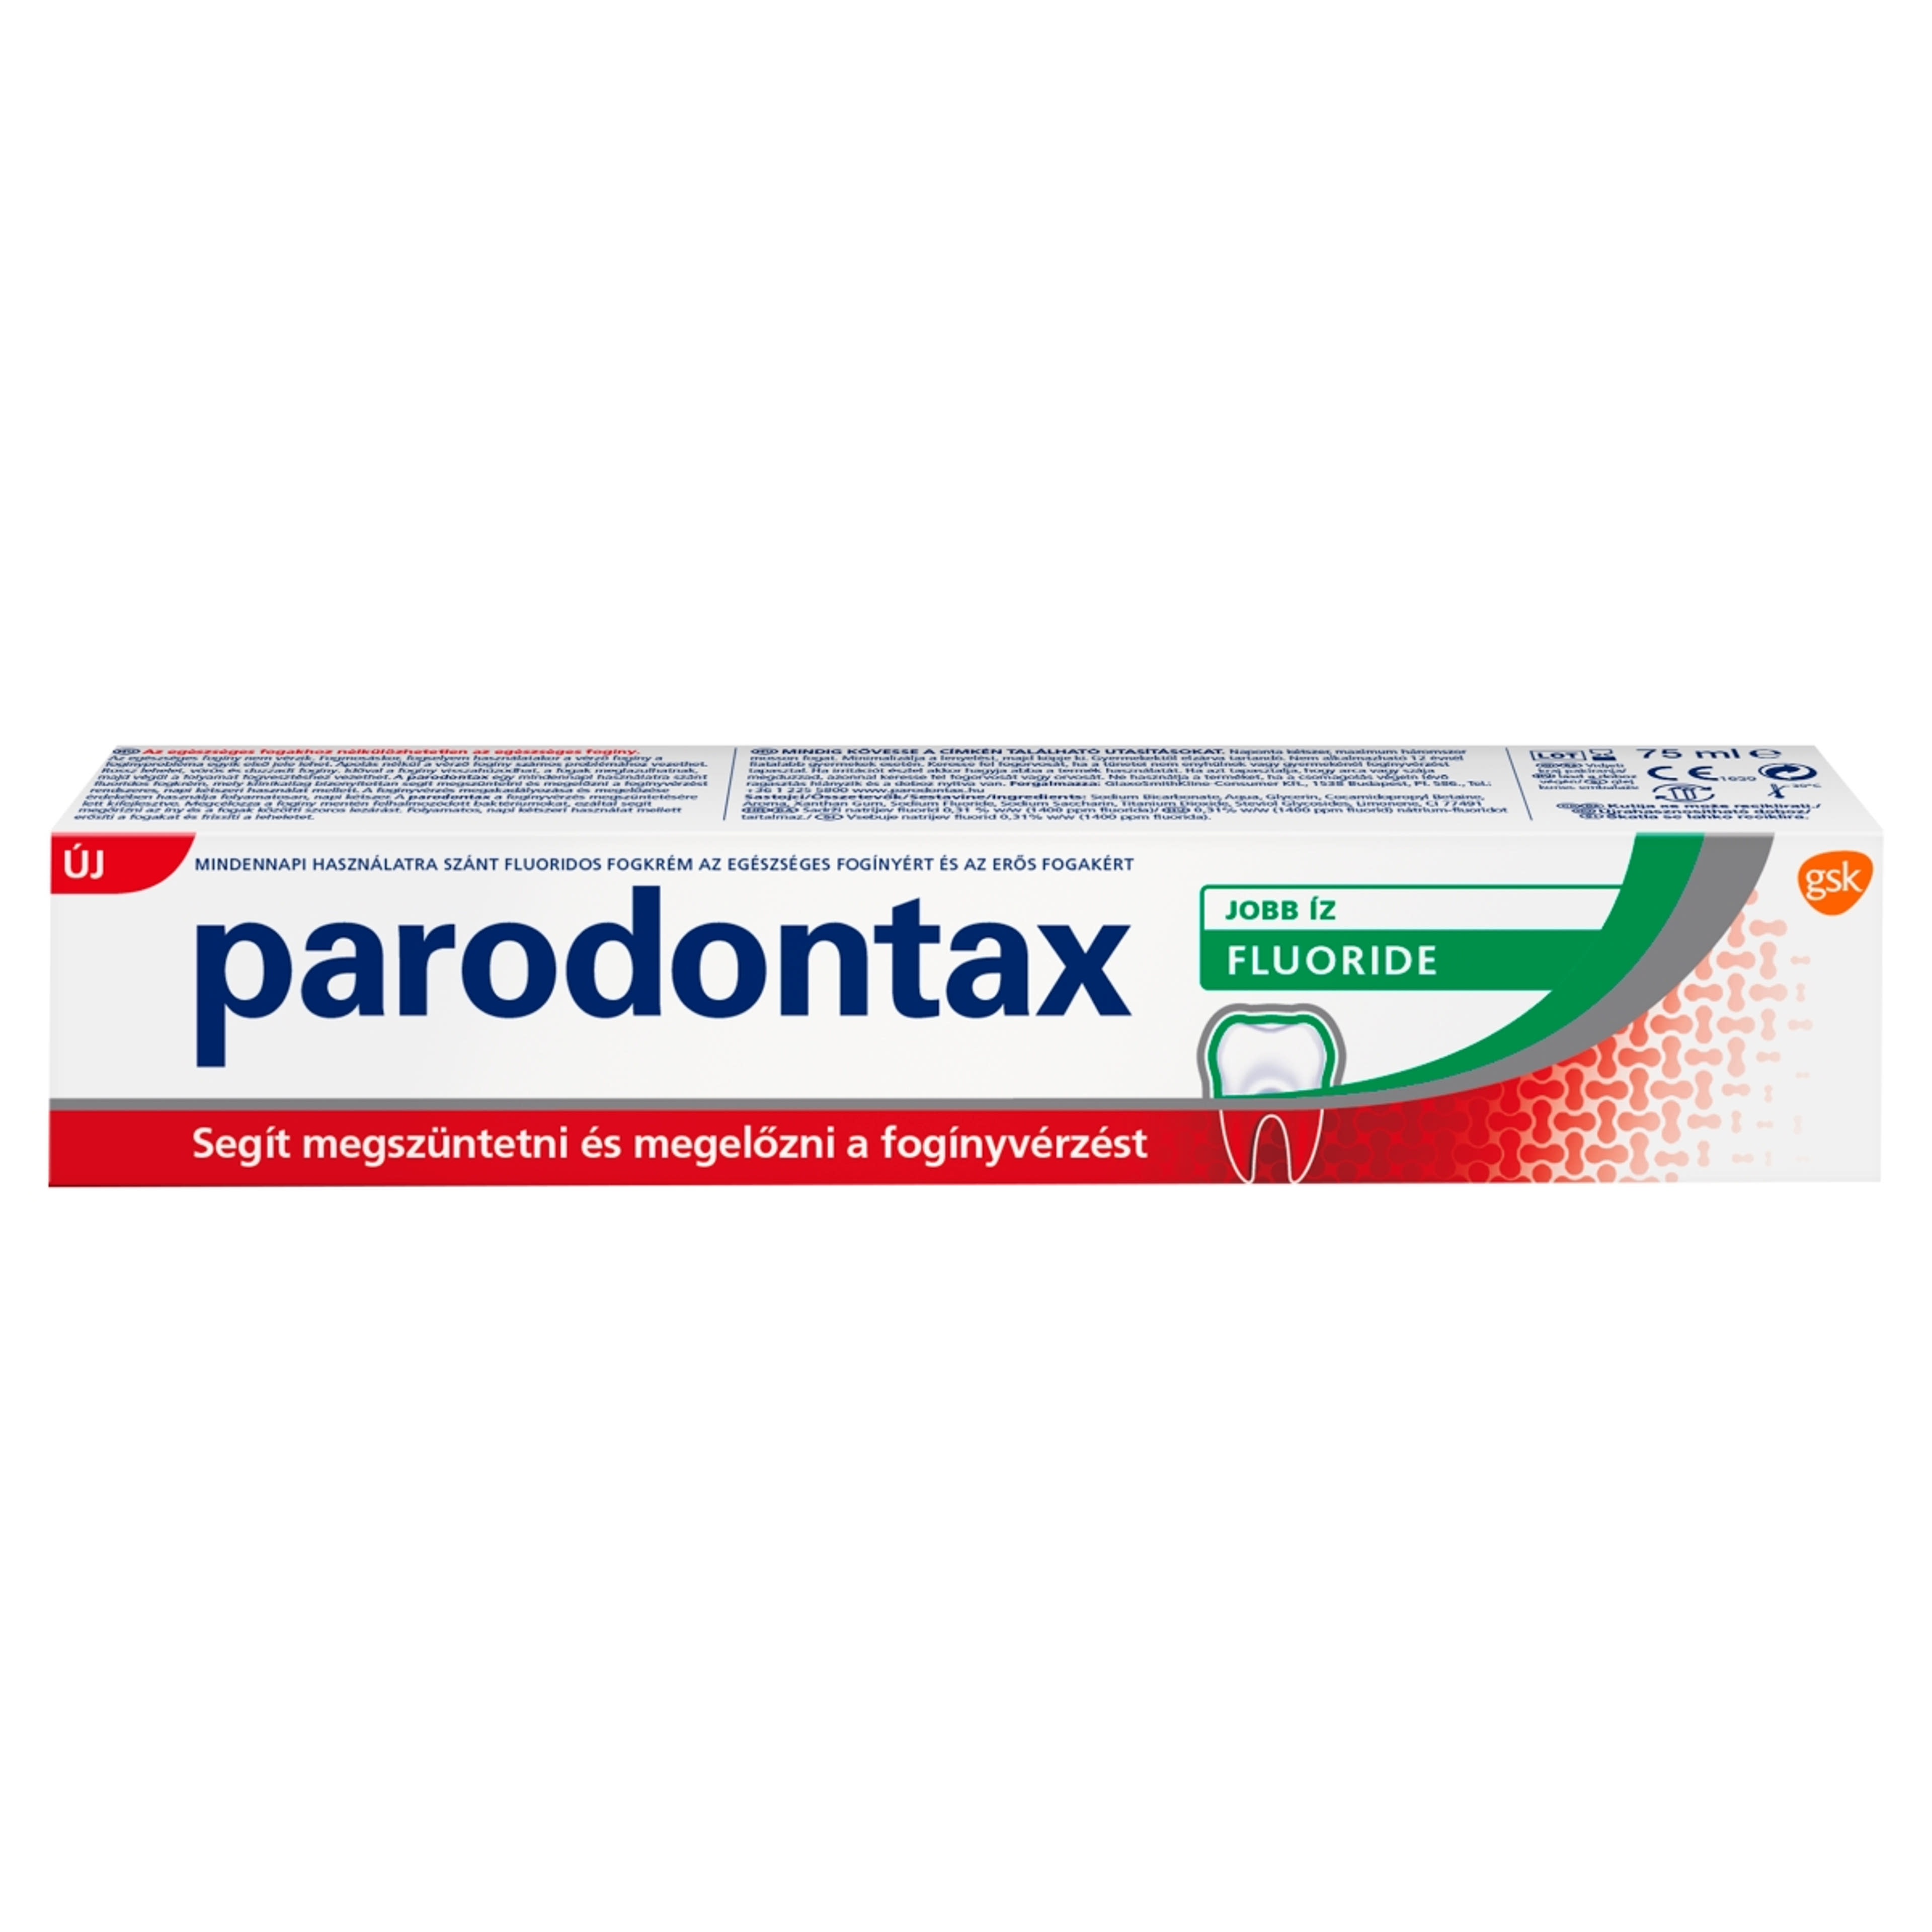 Parodontax Flouride fogkrém - 75 ml-1